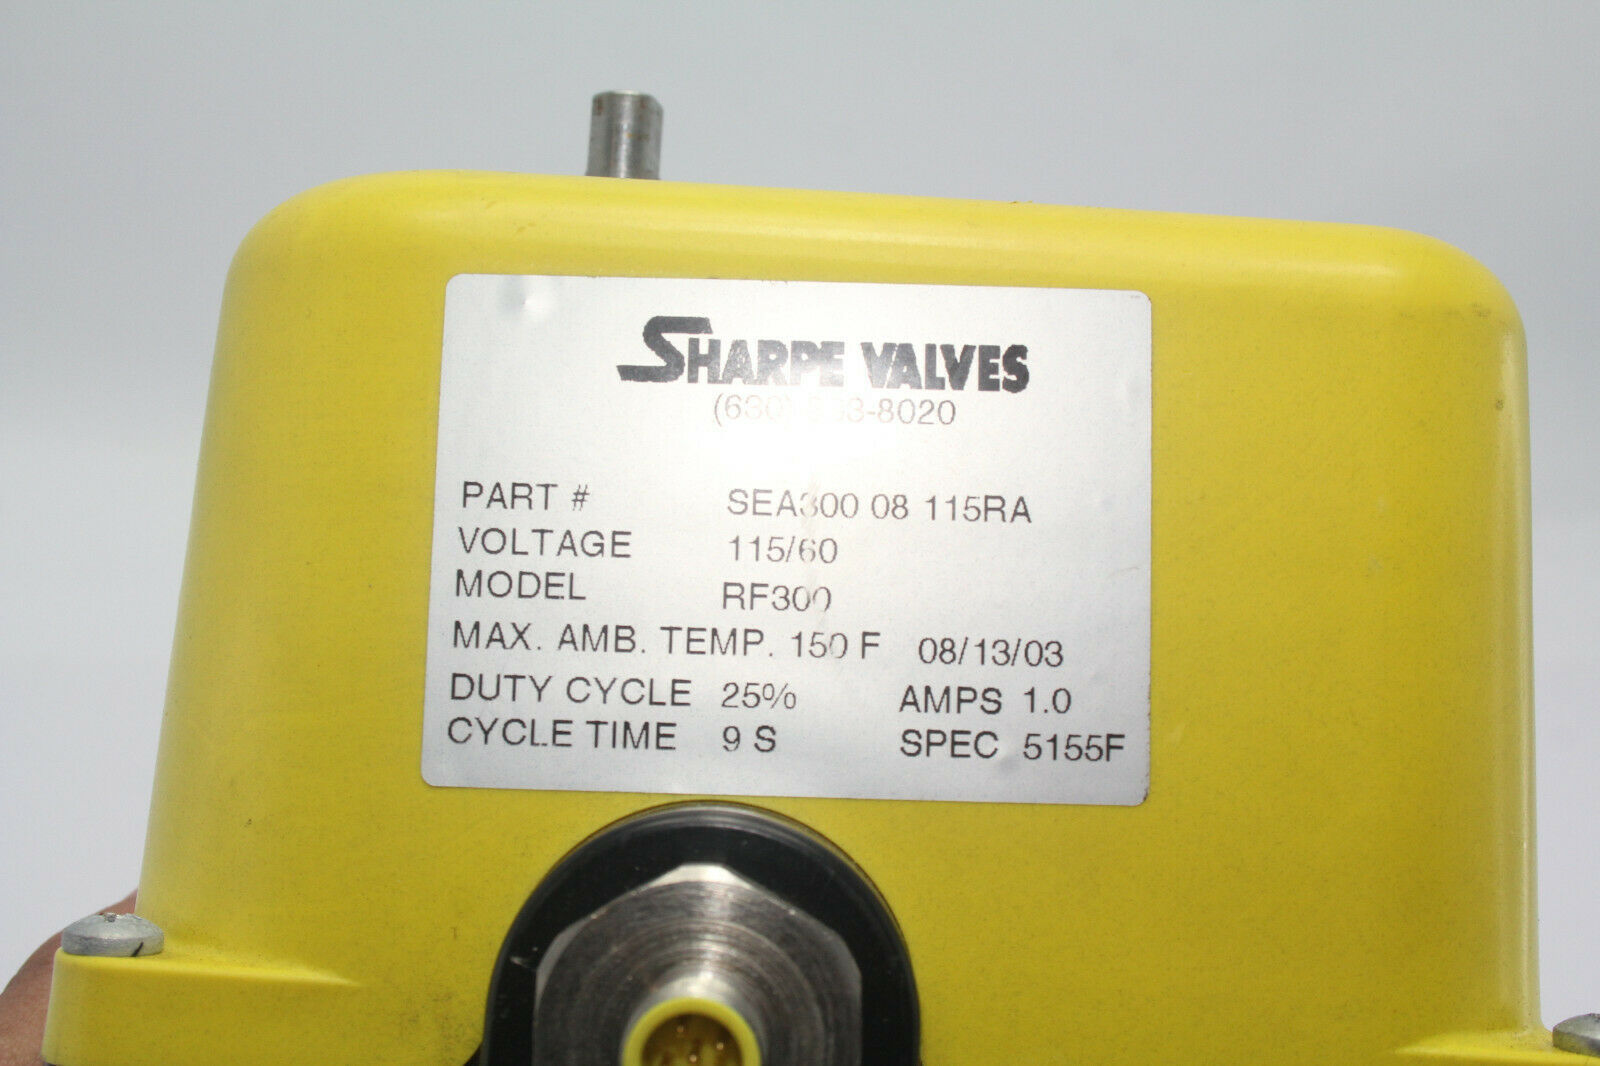 Sharpe Valve SEA 300 08 115RA 3/4